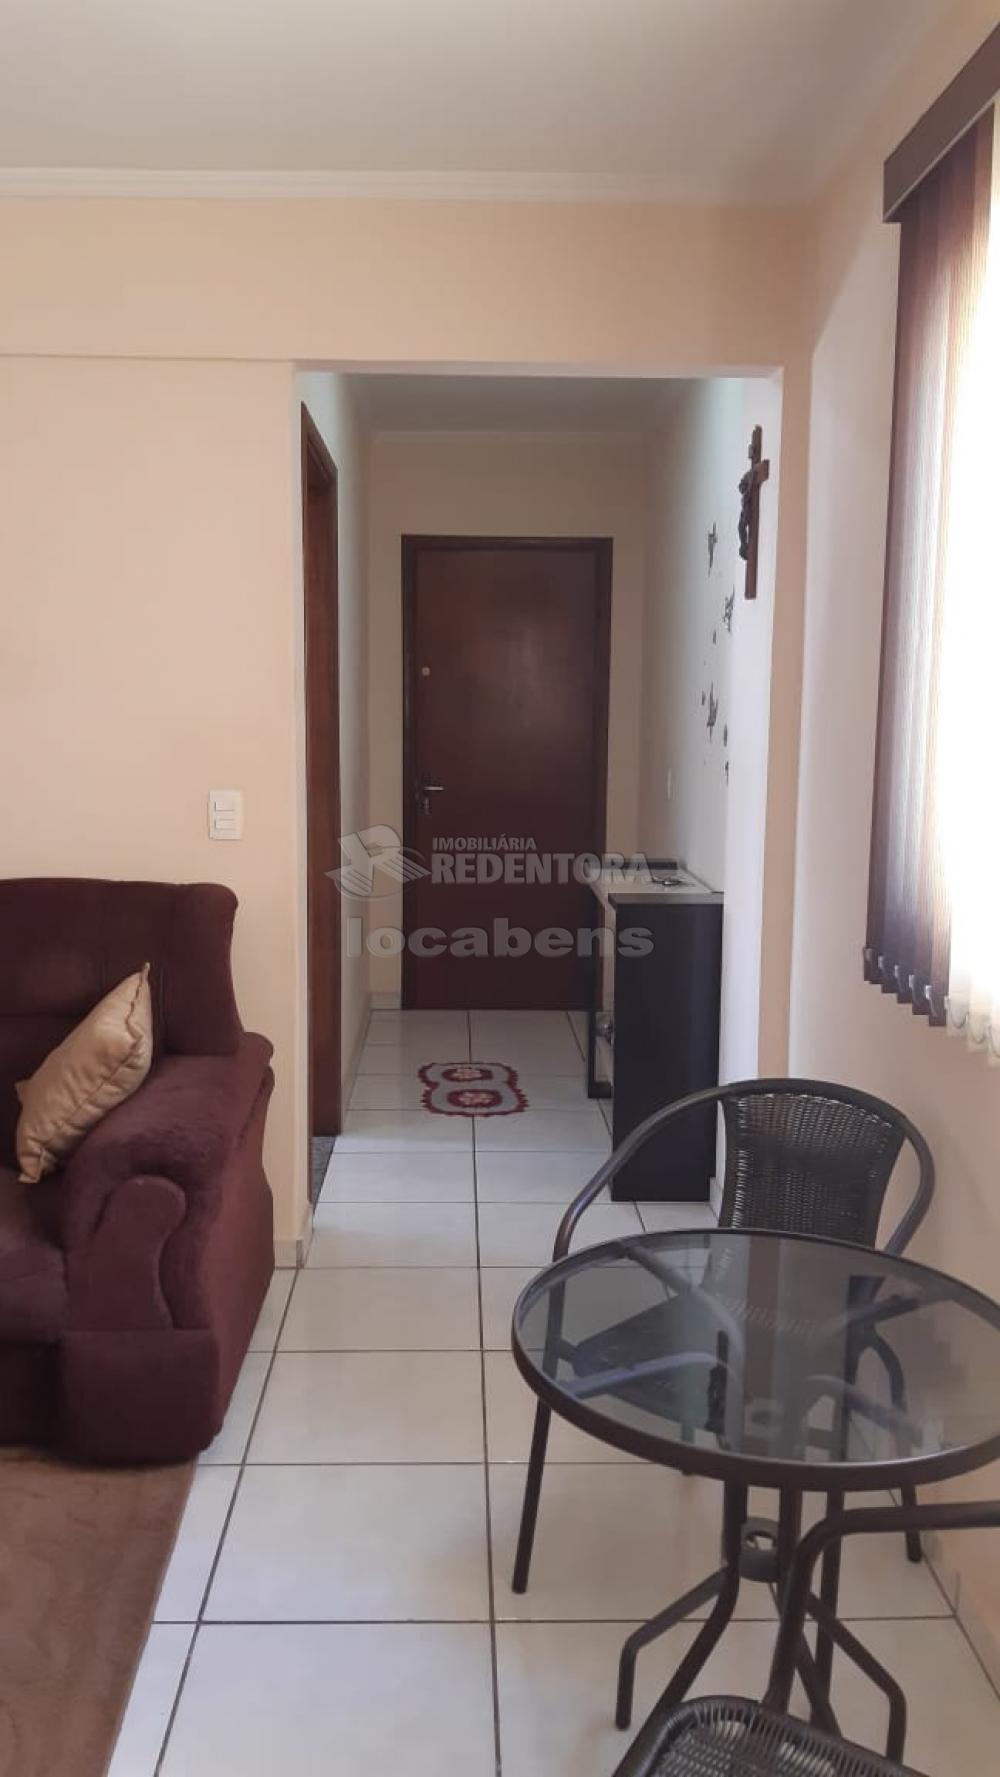 Comprar Apartamento / Padrão em São José do Rio Preto apenas R$ 200.000,00 - Foto 13